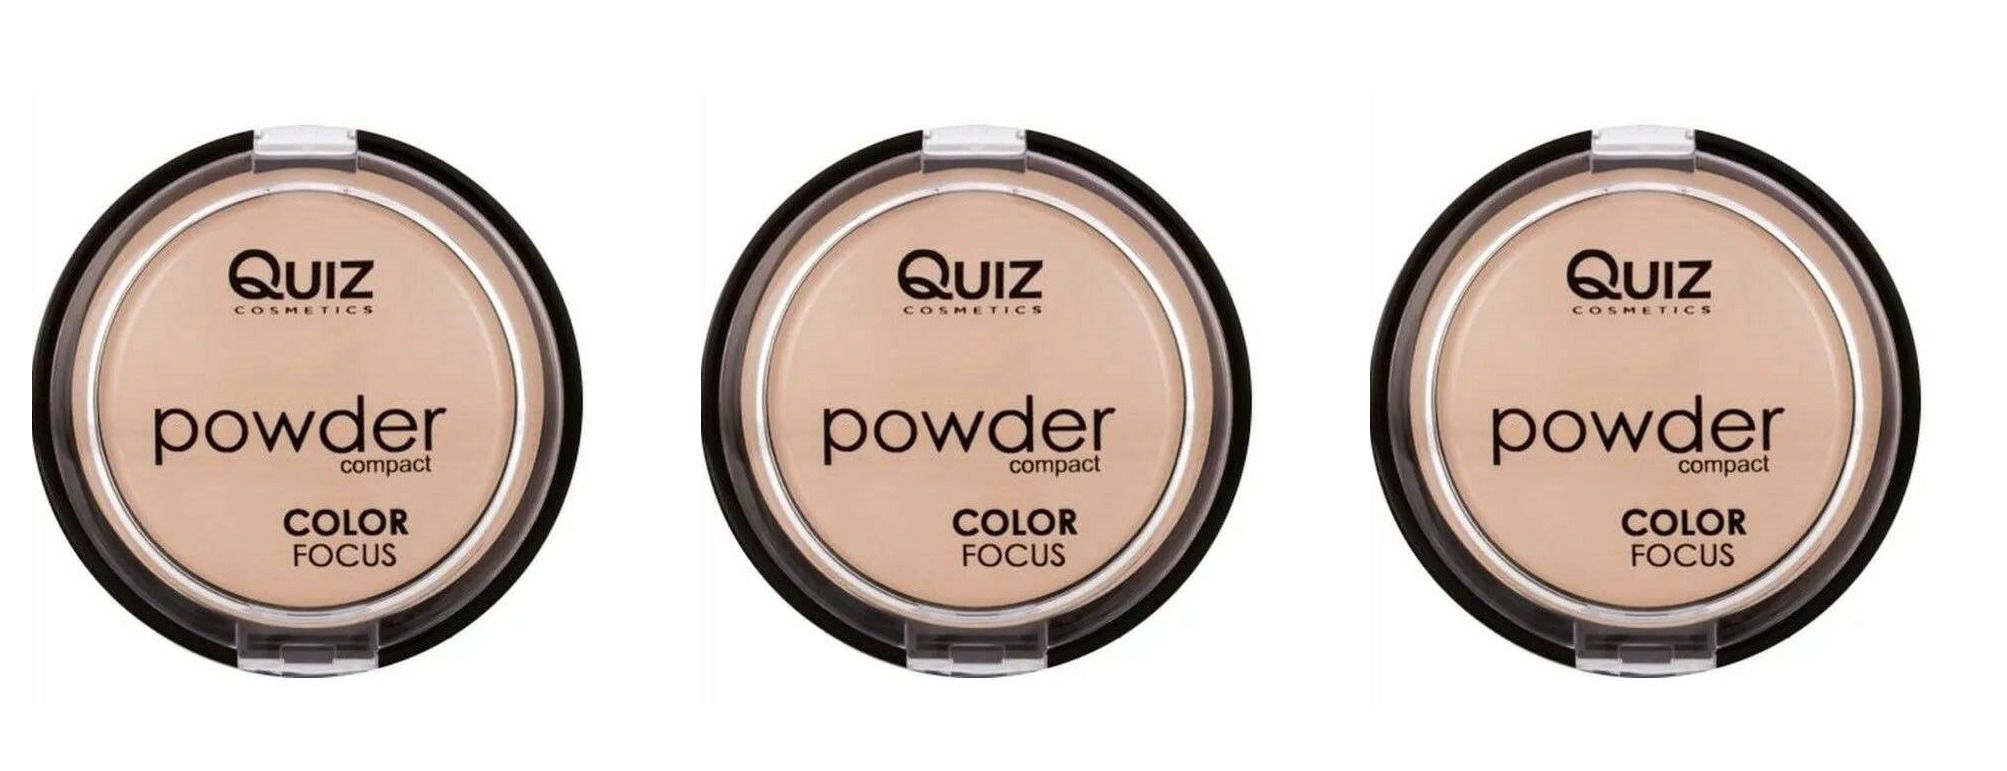 Пудра компактная Quiz cosmetics, Powder Focus, Color 60, 3 шт clé de peau beauté моно тени для век powder eye color solo